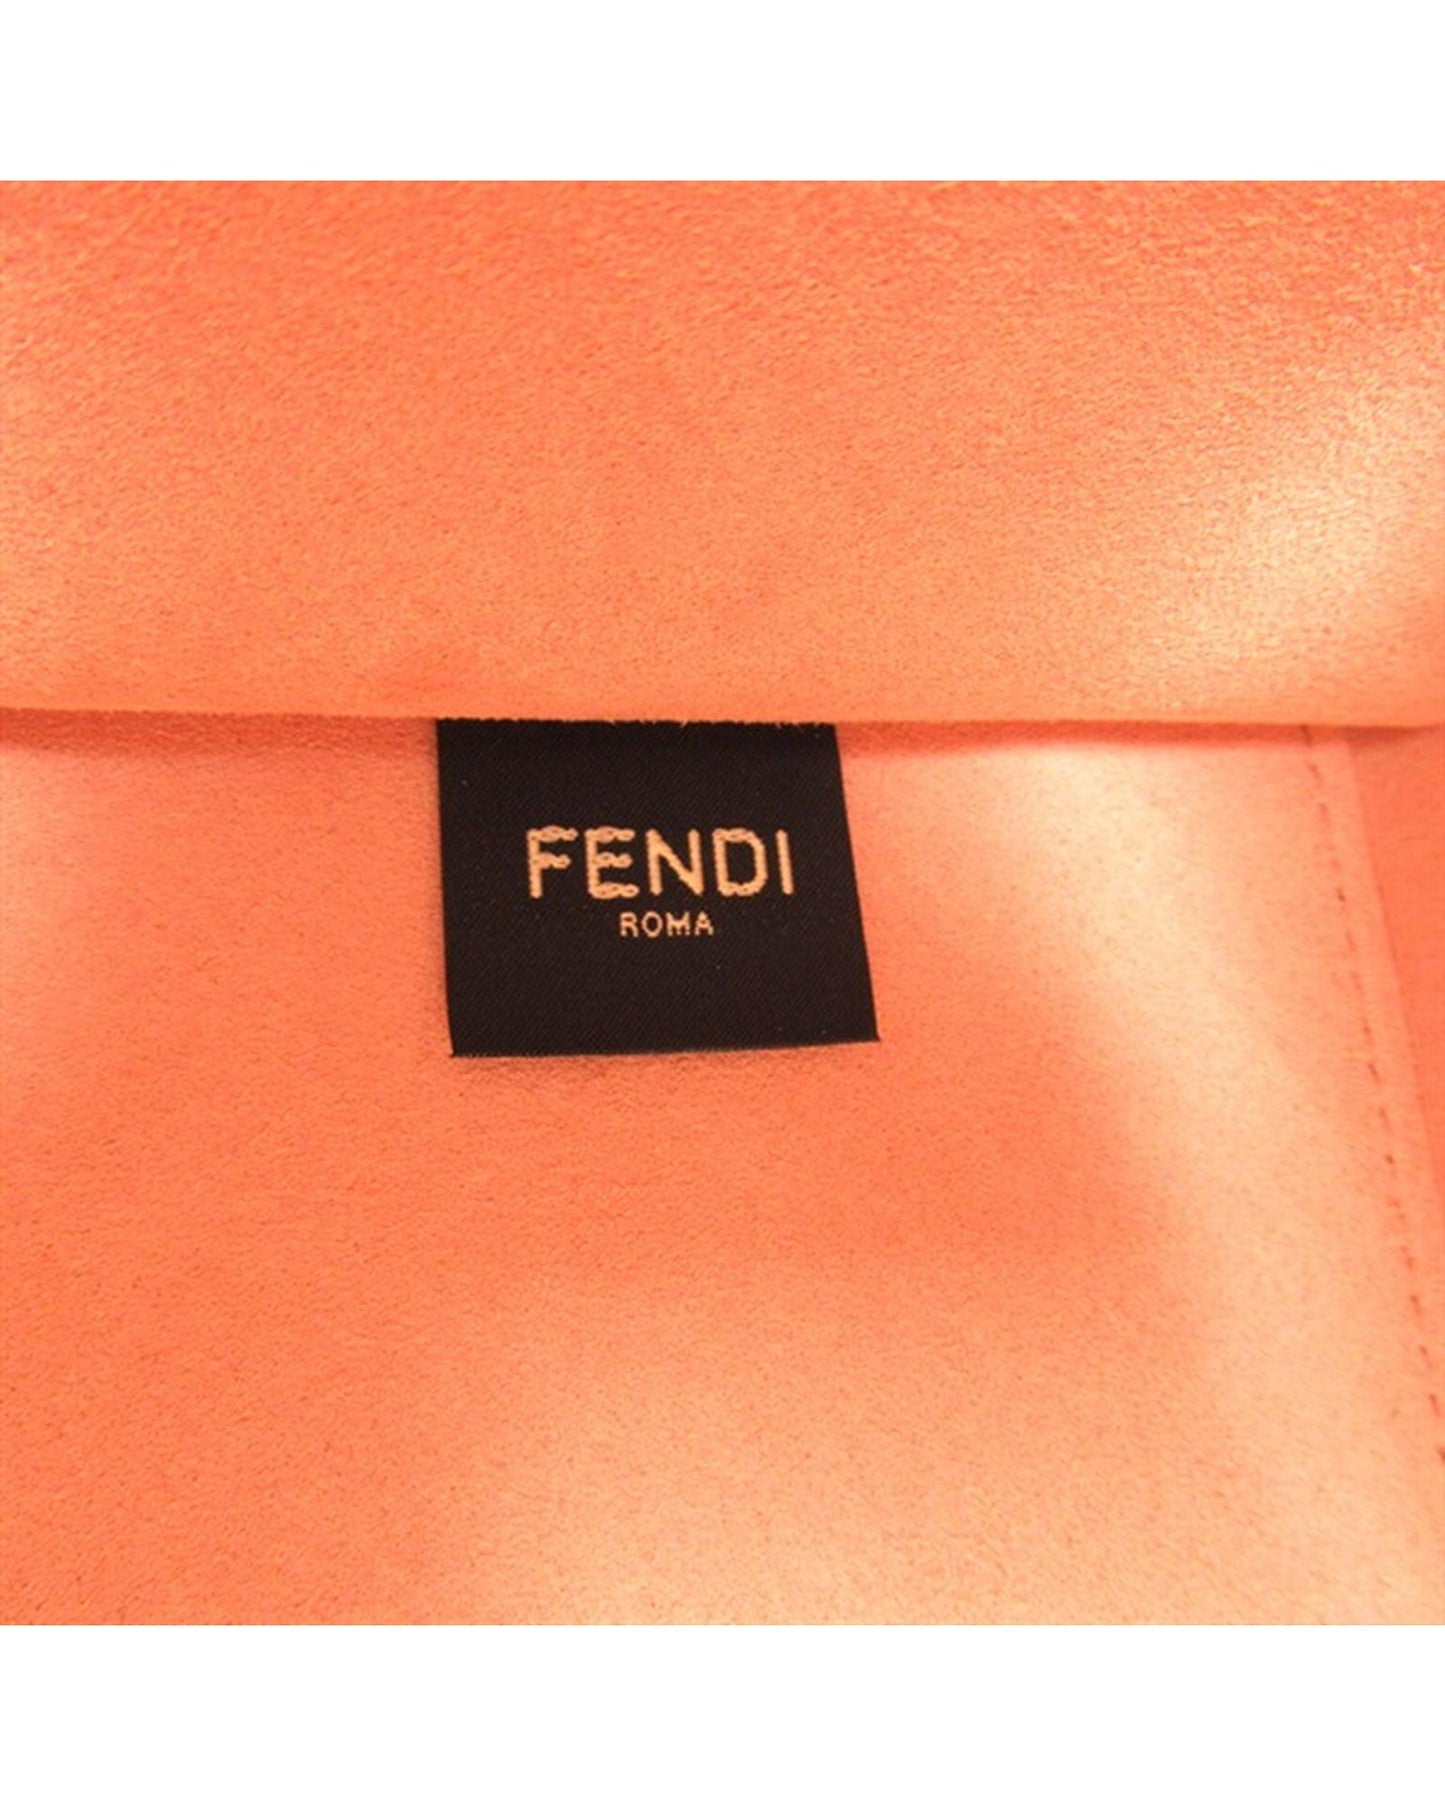 Fendi Women's Pink Fendi Sunshine Logo Tote Bag in Pink